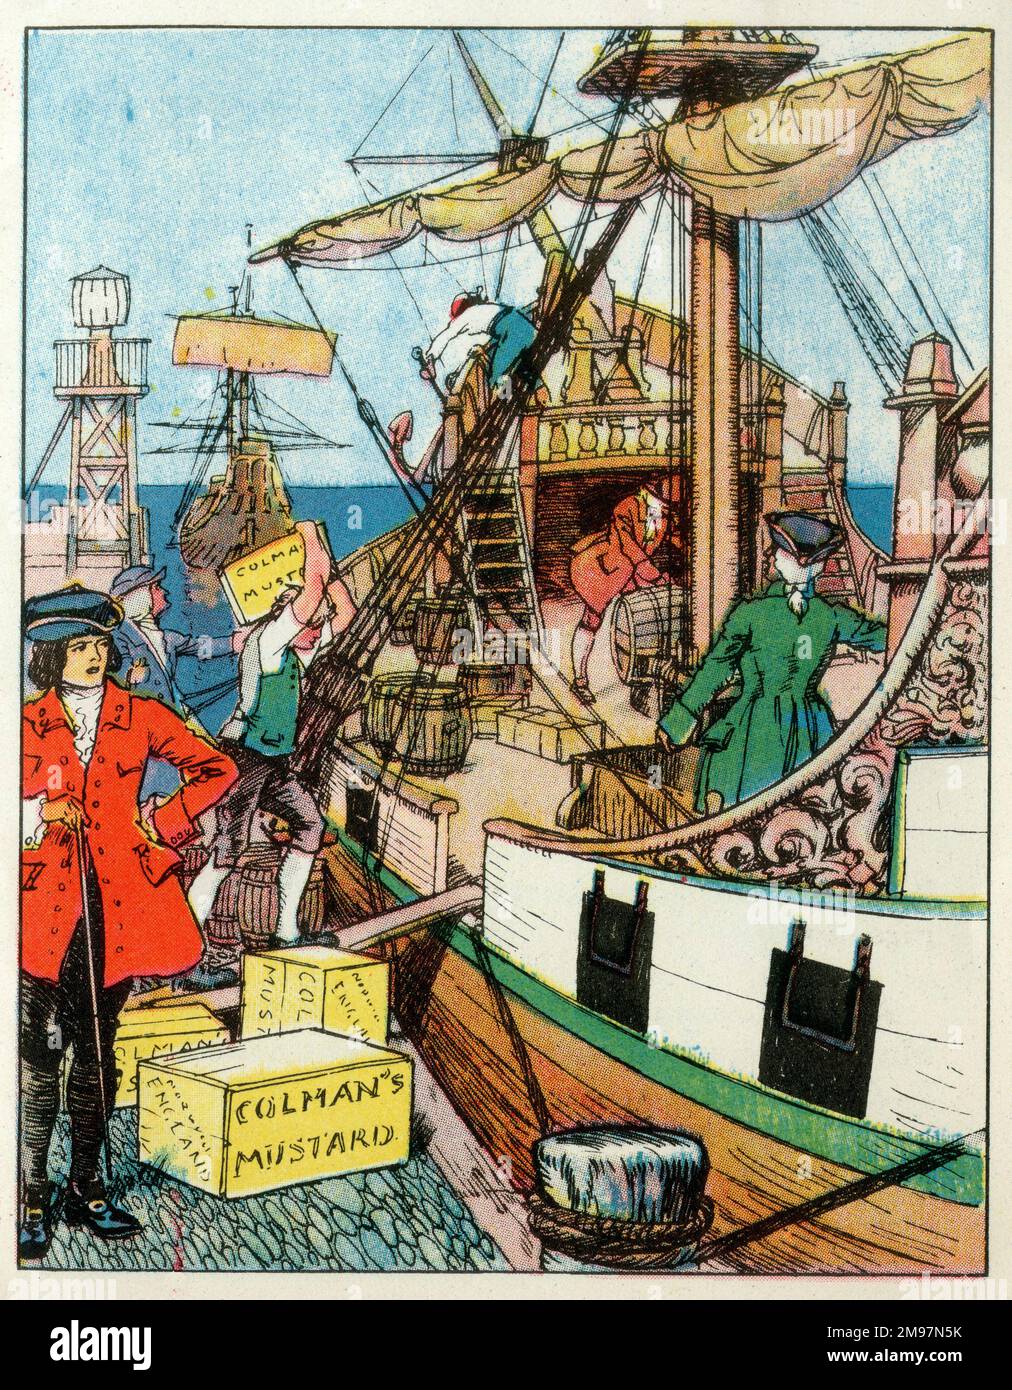 La moutarde de la Marine royale étant chargée à bord d'un navire visant à élargir la portée de l'Empire britannique pendant le règne du roi George II au milieu du siècle 18th. Banque D'Images